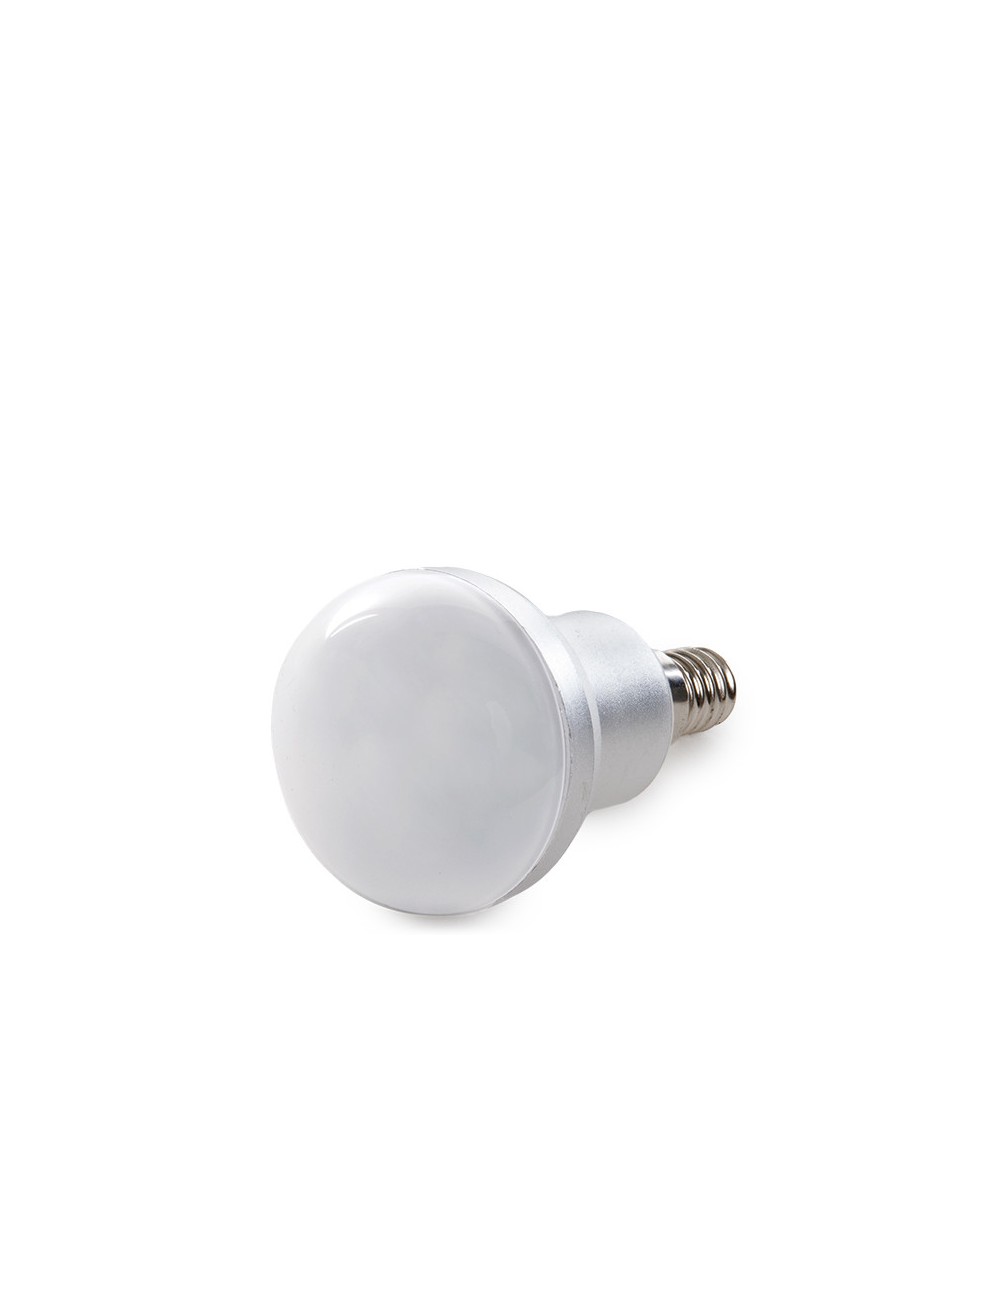 Ampoule LED E14 5W 350Lm 6000ºK R50 40.000H [SL-7302-R50-E14-CW]